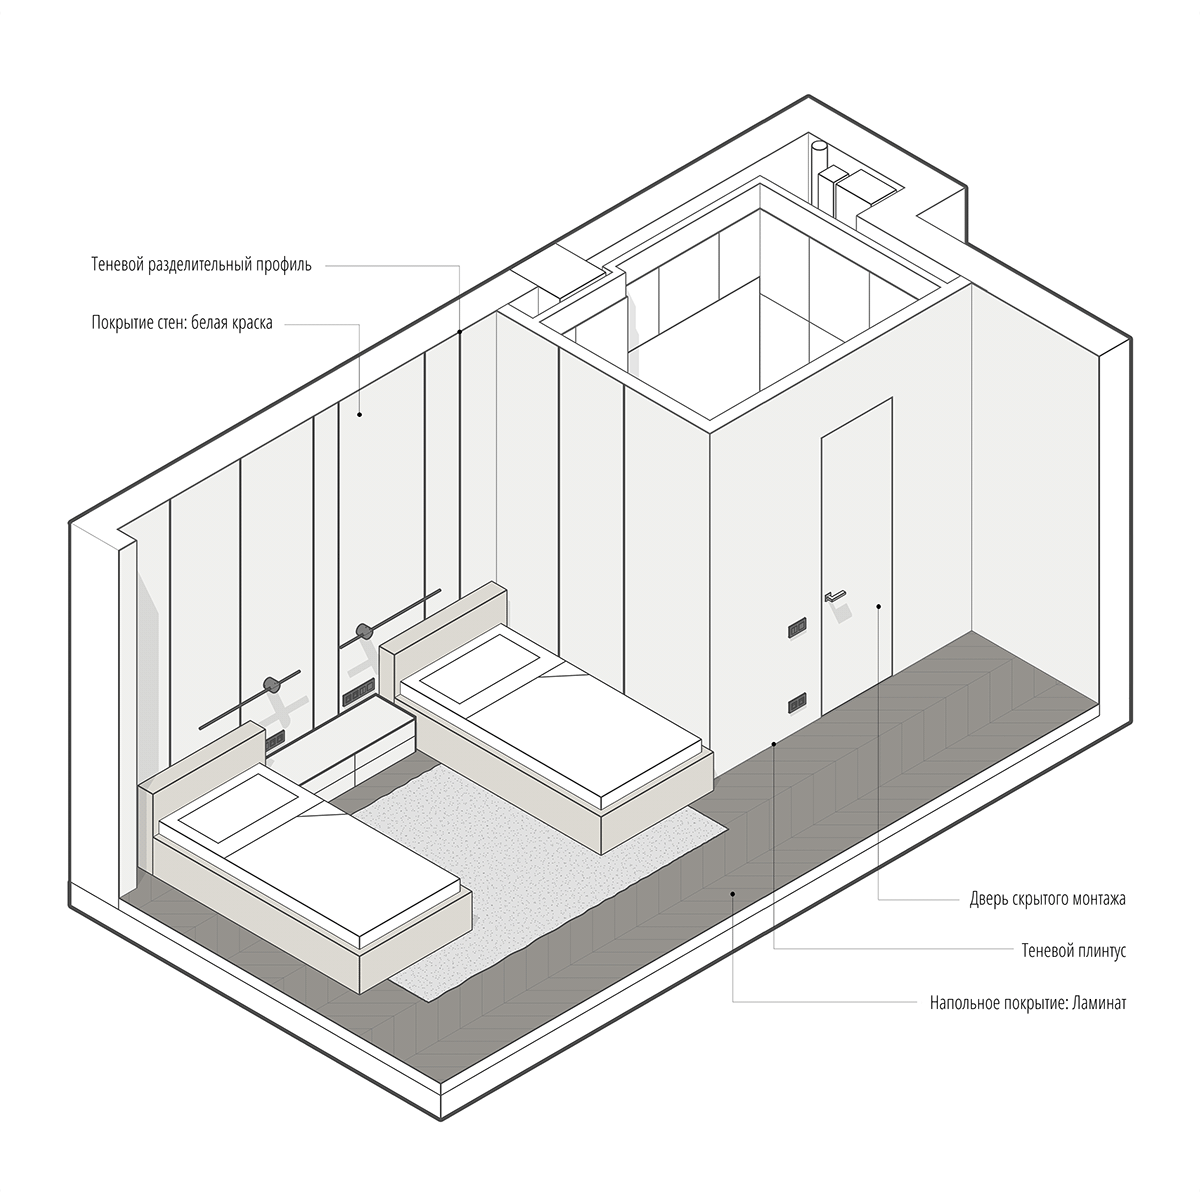 3D 3ds max architecture corona design designs Interior interior design  Render visualization